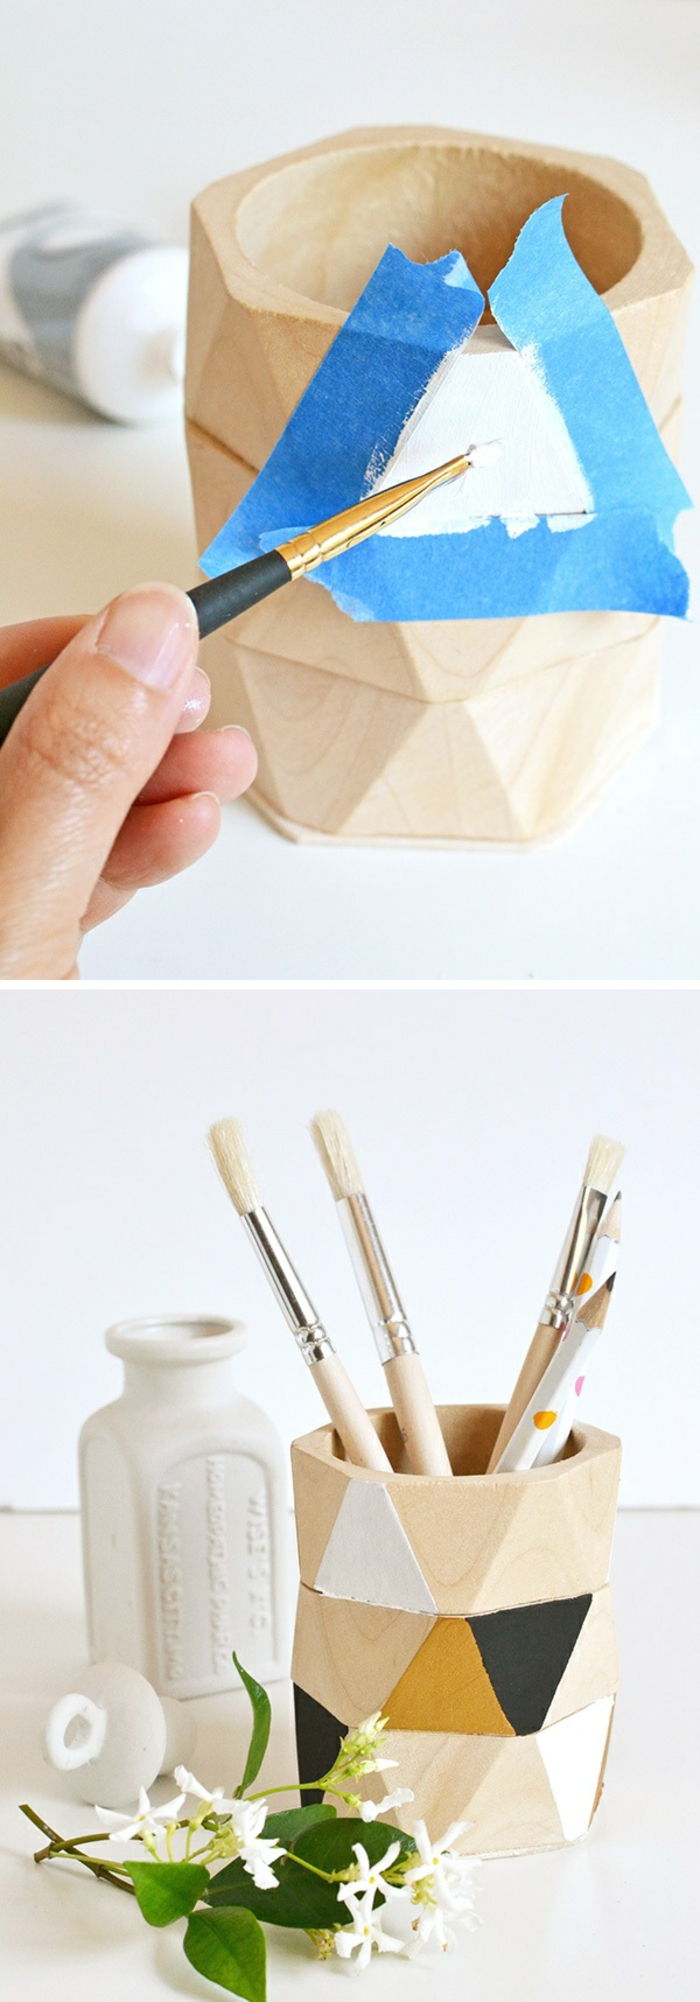 pagaminti ir papuošti patiems mediniams pieštukų laikikliams, lipnia juosta, dažais, šepečiais